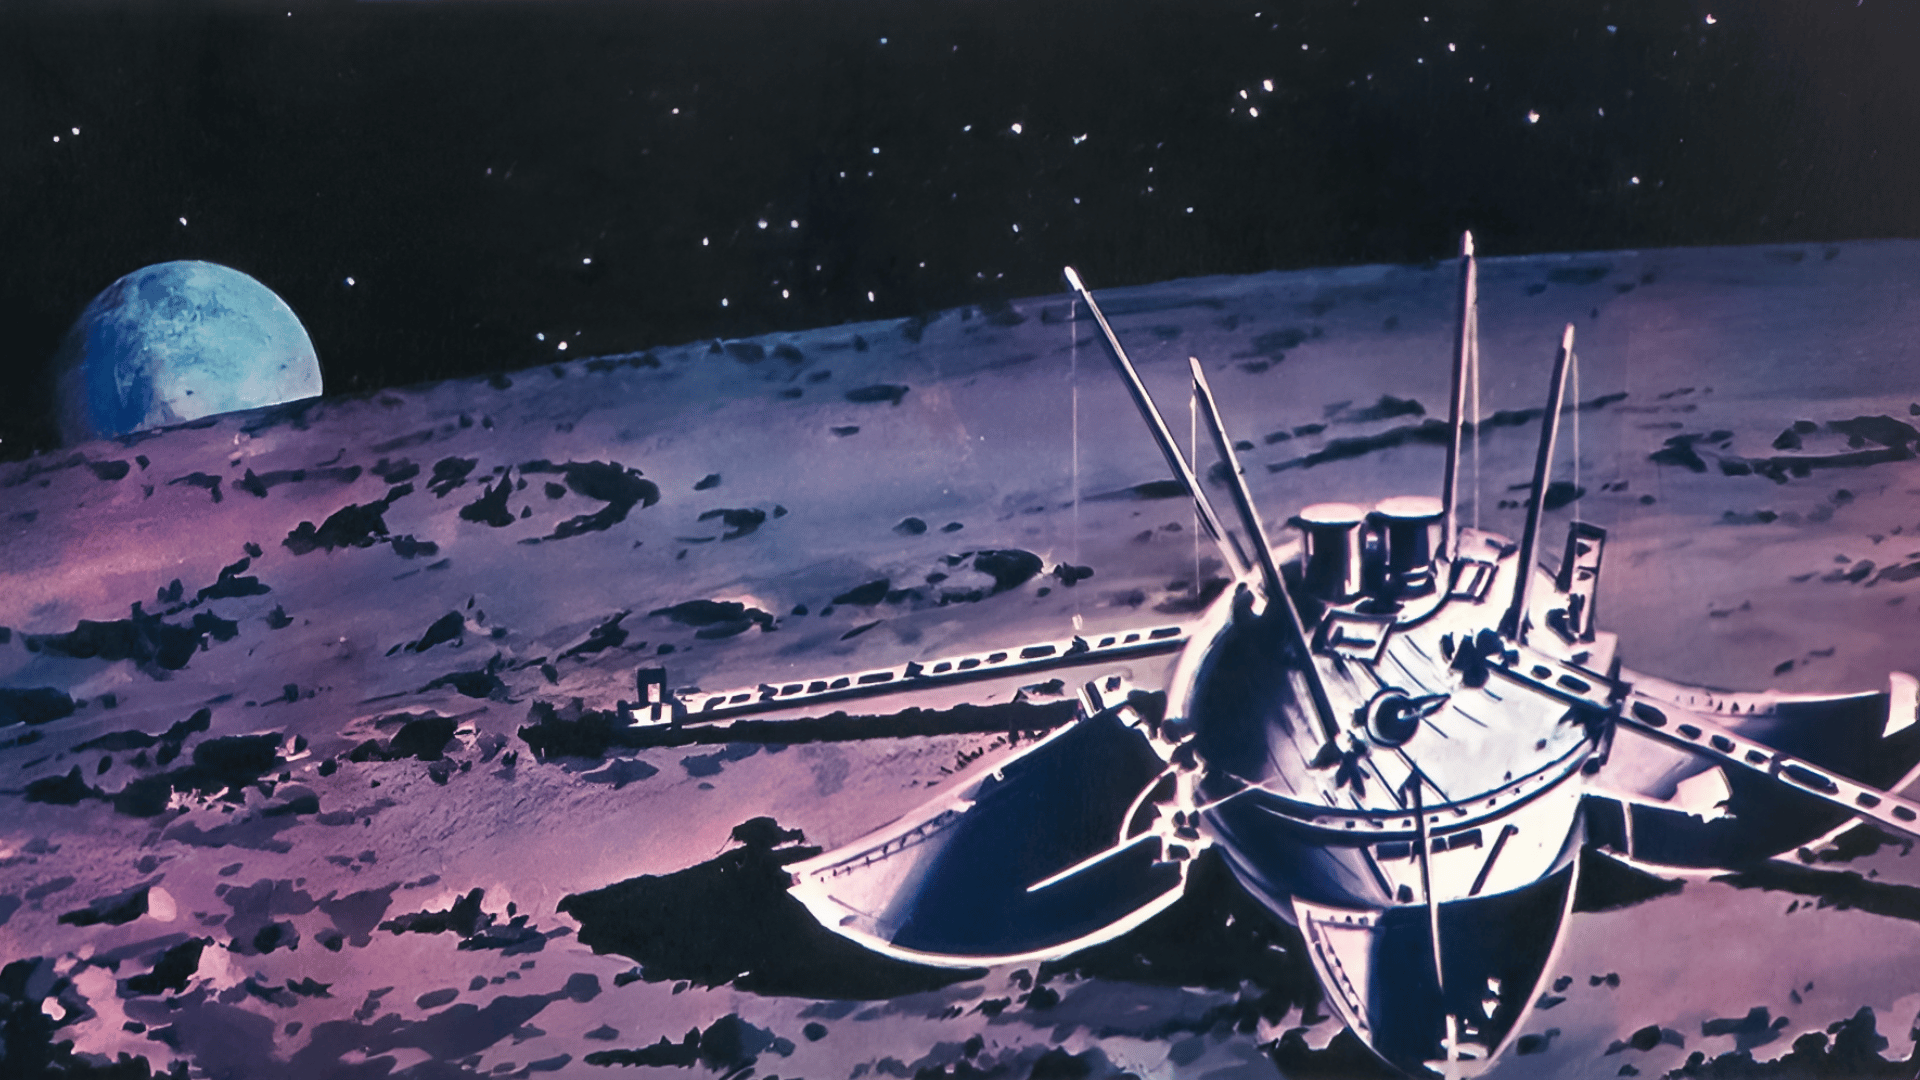 Первые межпланетные полеты. Луна-9 автоматическая межпланетная станция. Советская АМС «Луна - 9». 1966 — СССР осуществил успешный запуск межпланетной станции «Луна-13».. Станция Луна-9 1966 года.